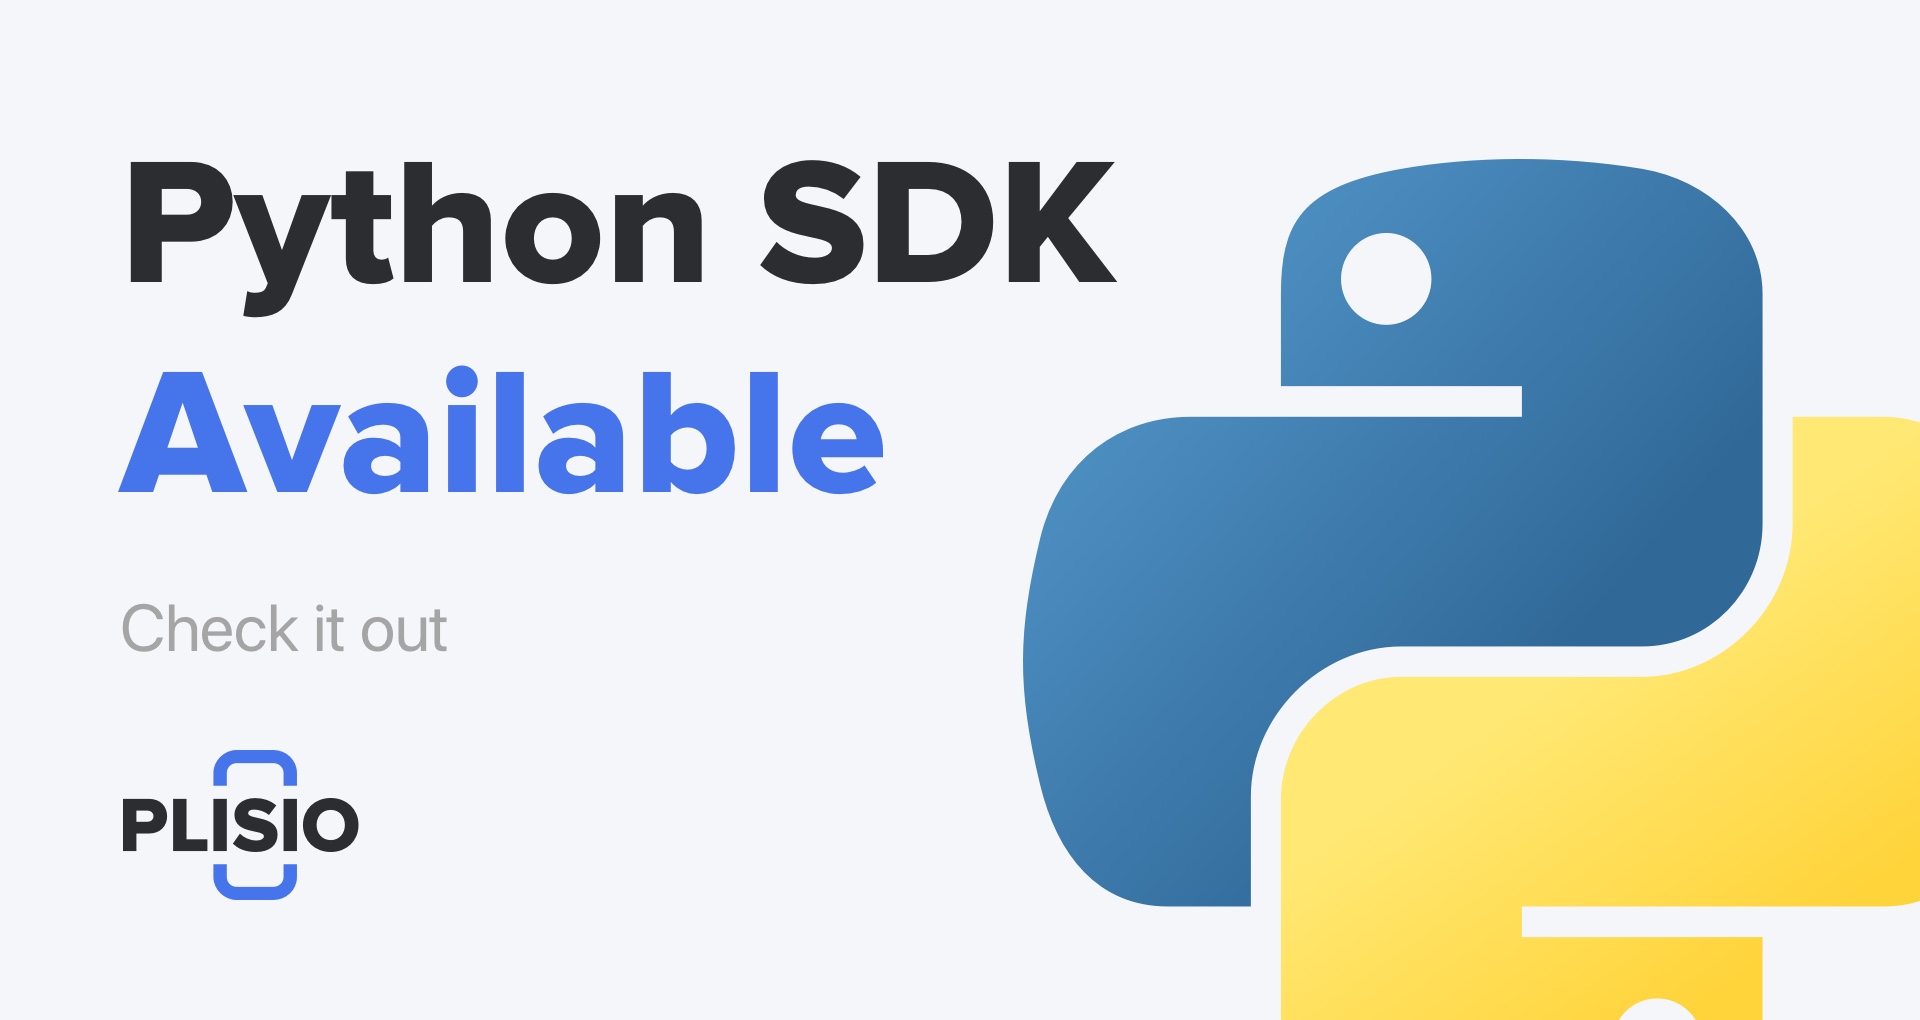 Le SDK Python est maintenant disponible. Vérifiez-le!